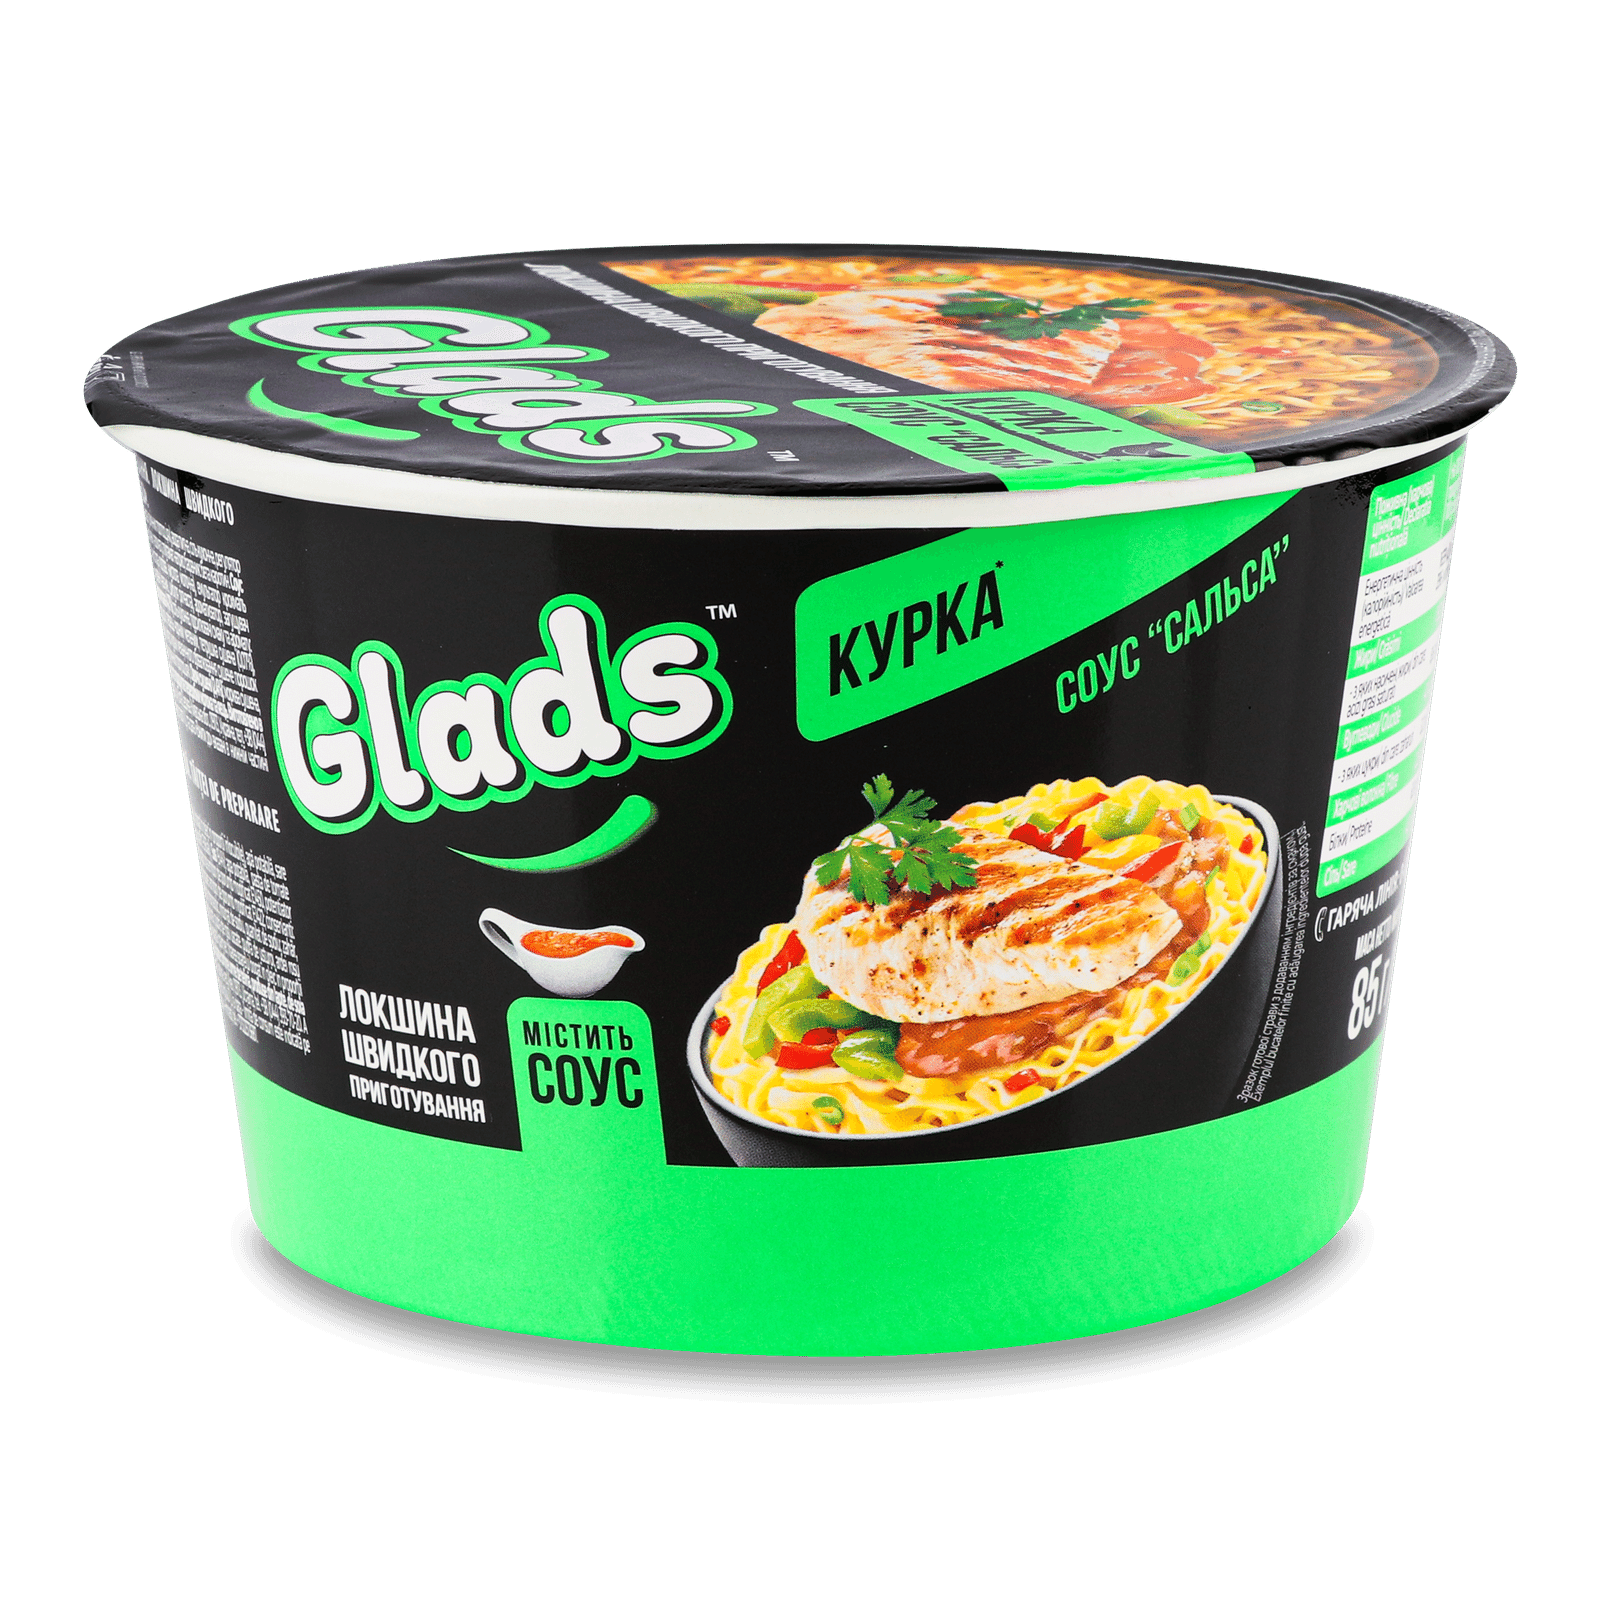 Локшина швидкого приготування Glads Курка та соус сальса - 1